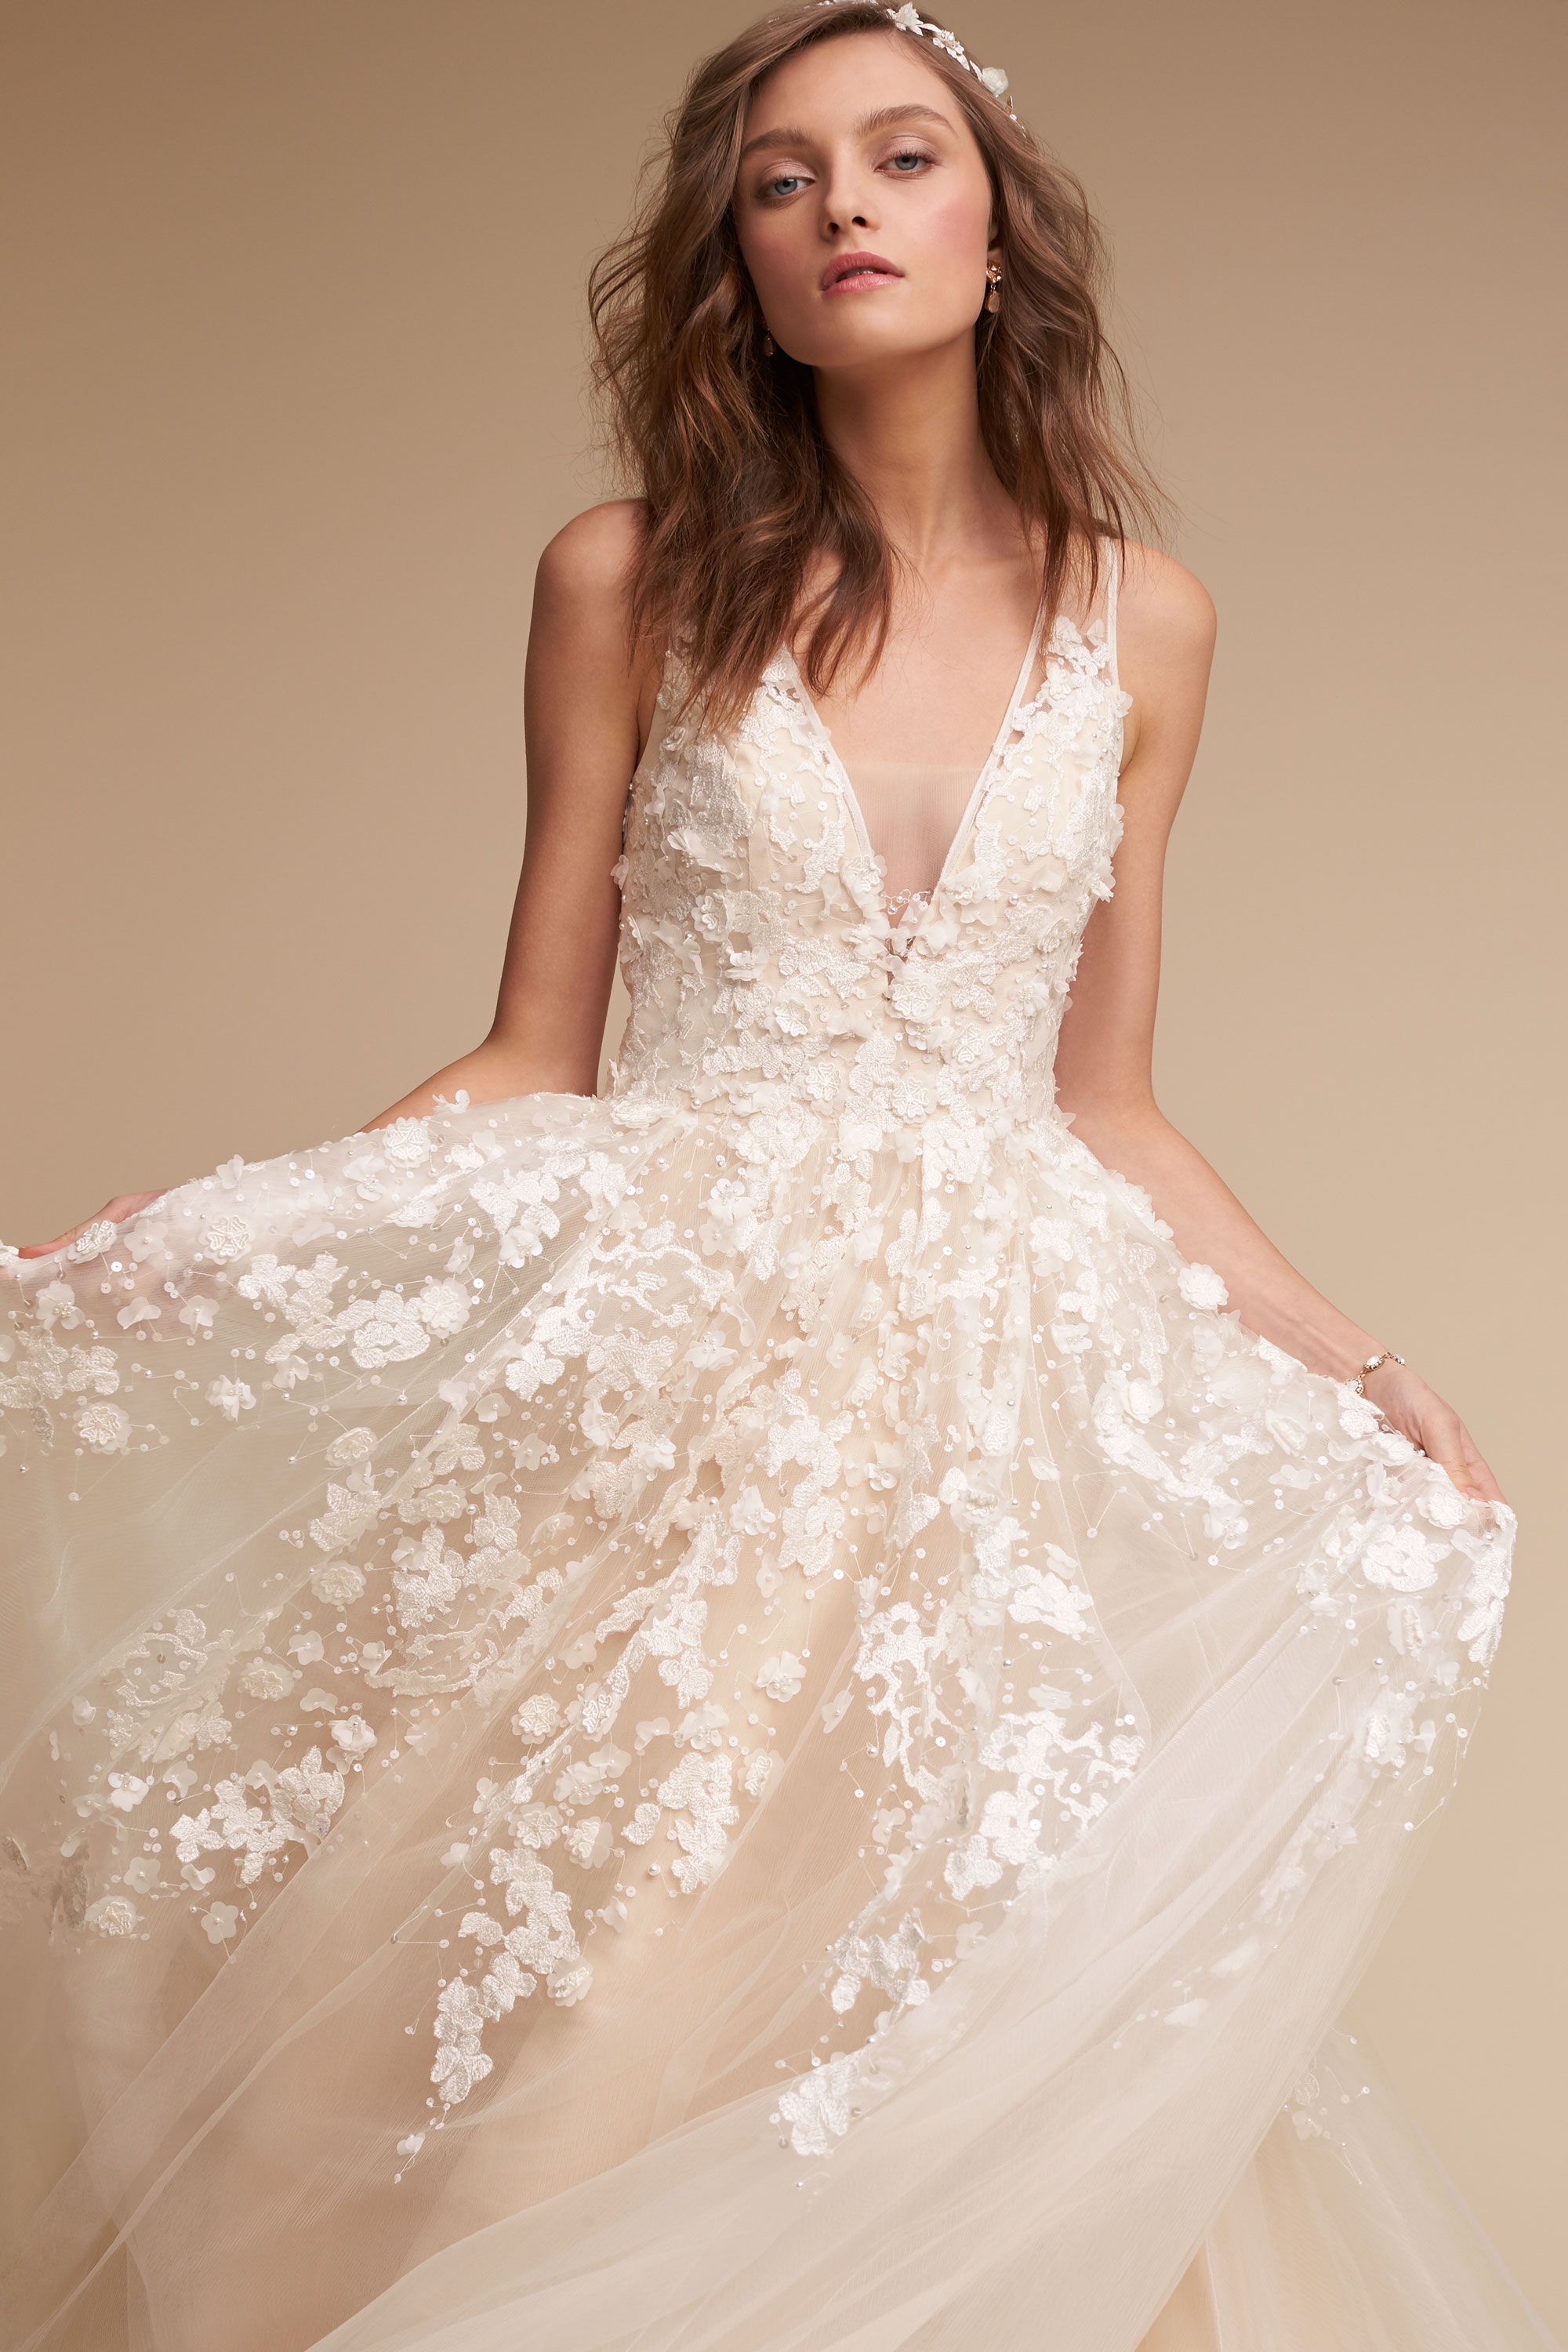 Dreamy BHLDN Wedding Dresses - Ariane Gown